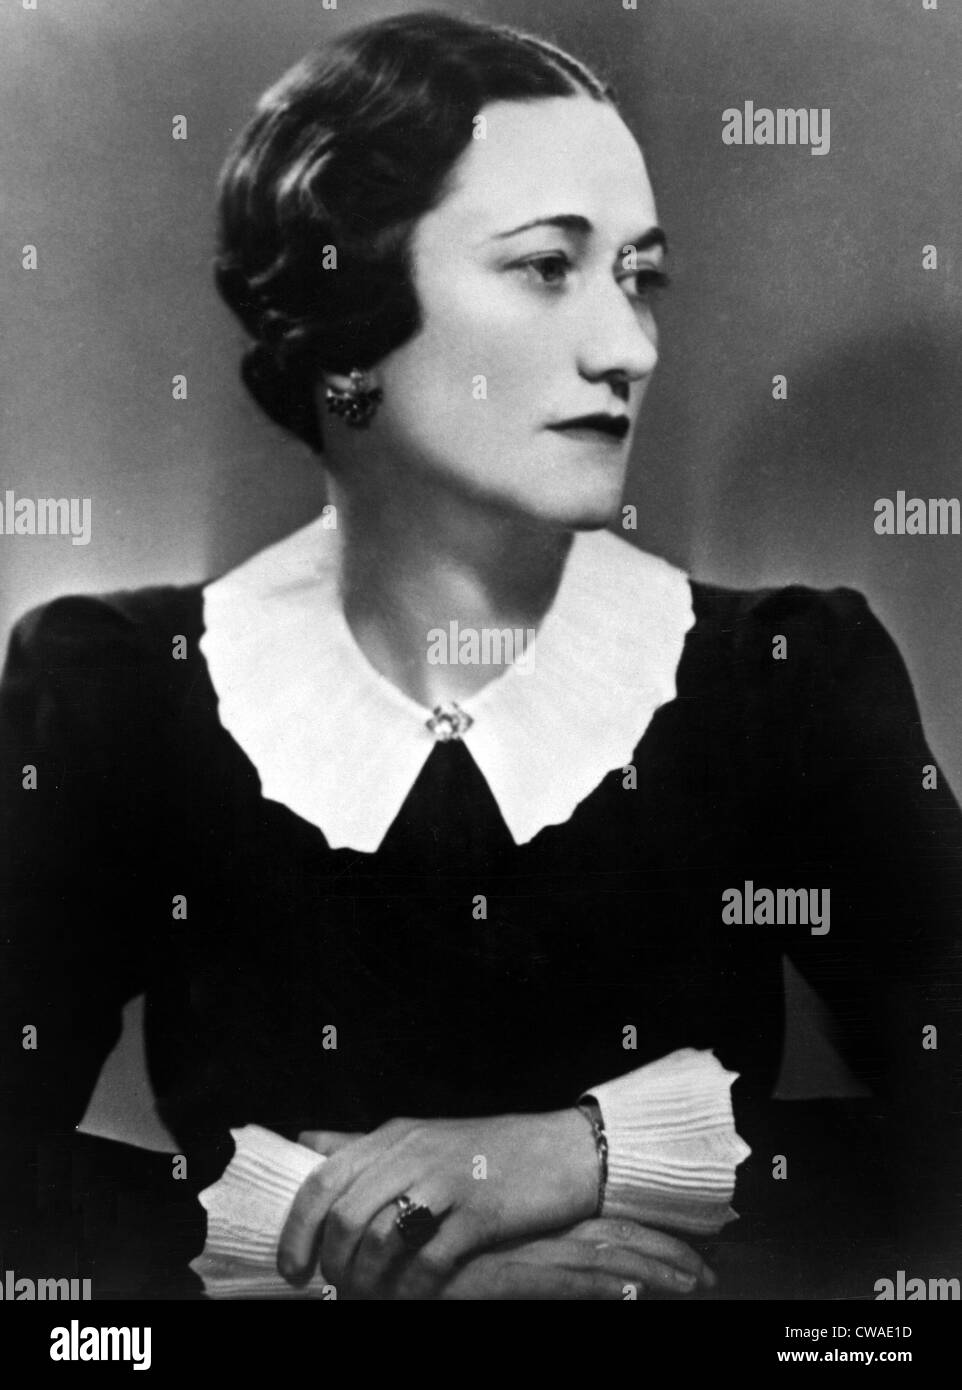 Duquesa de Windsor Wallis Simpson, retrato. Cortesía: CSU Archives / Everett Collection Foto de stock